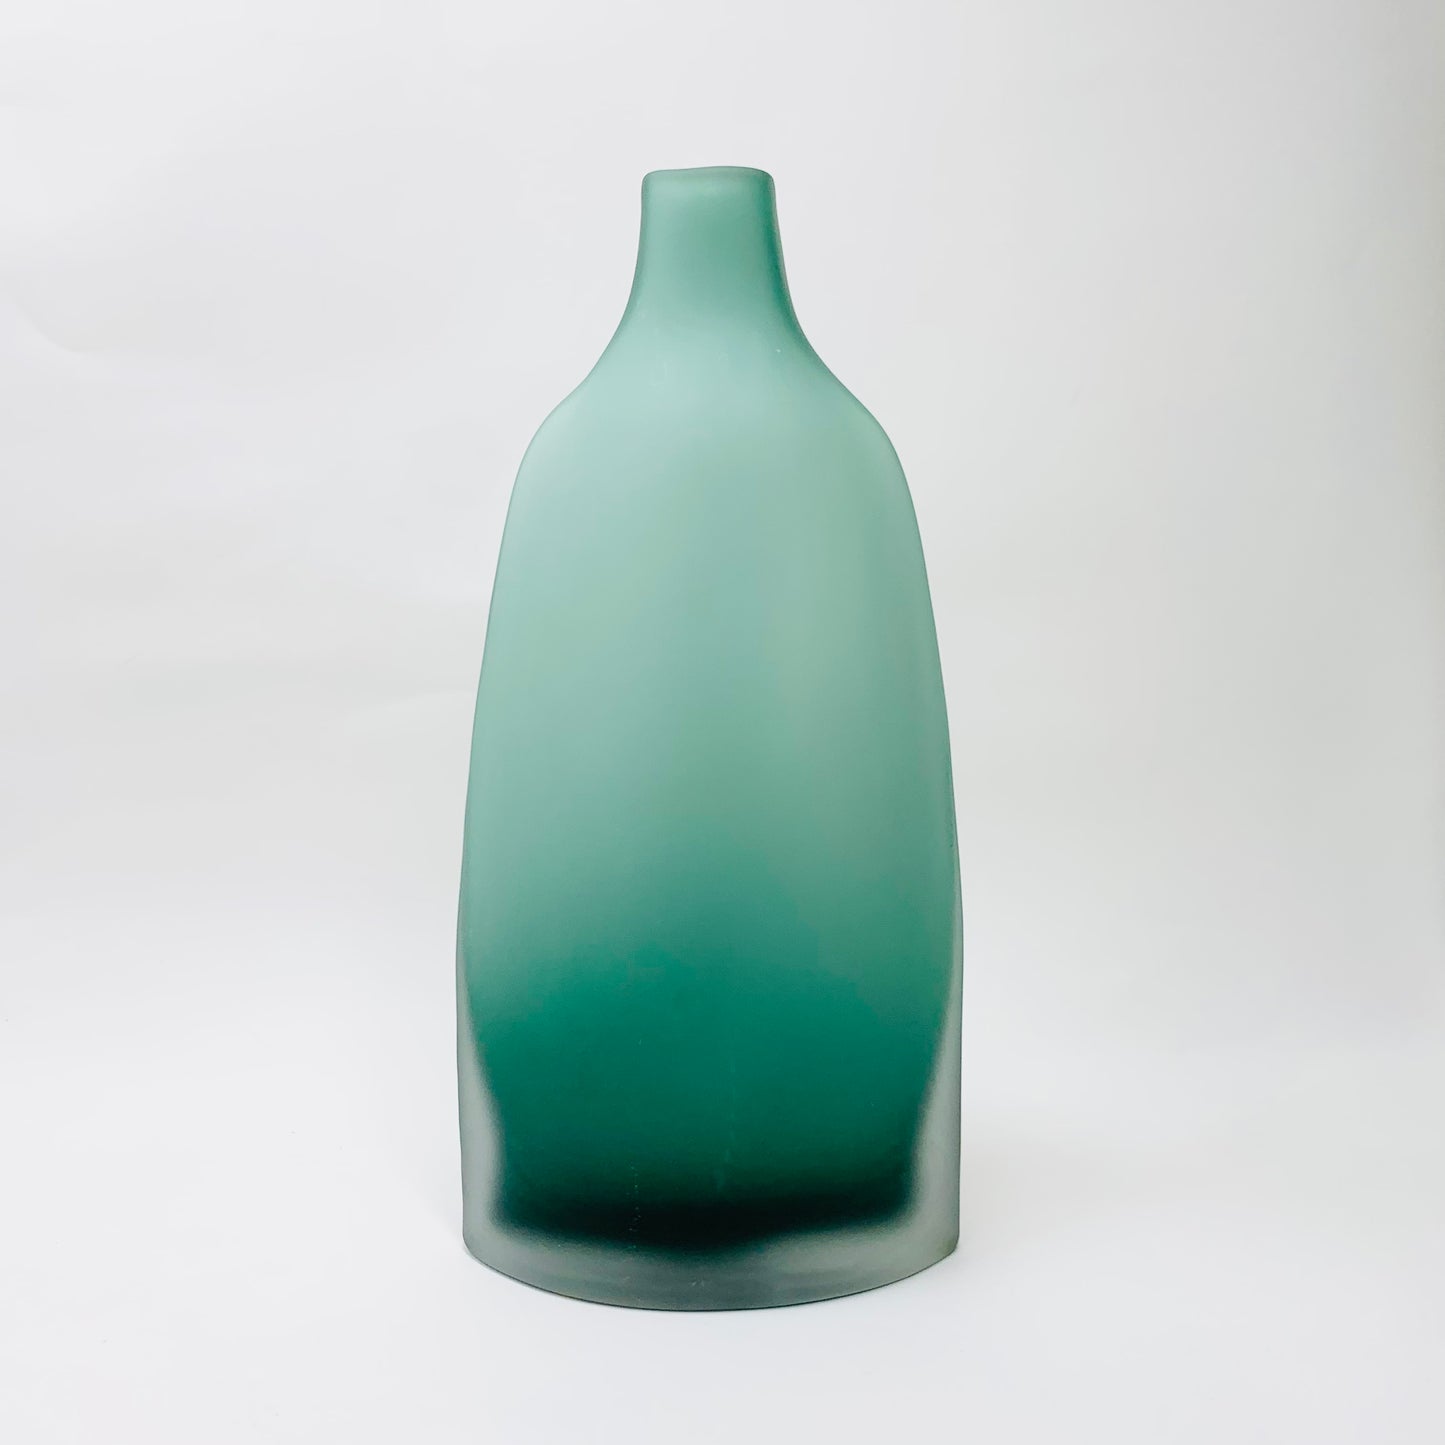 Vintage large sage green cased white satin glass vase